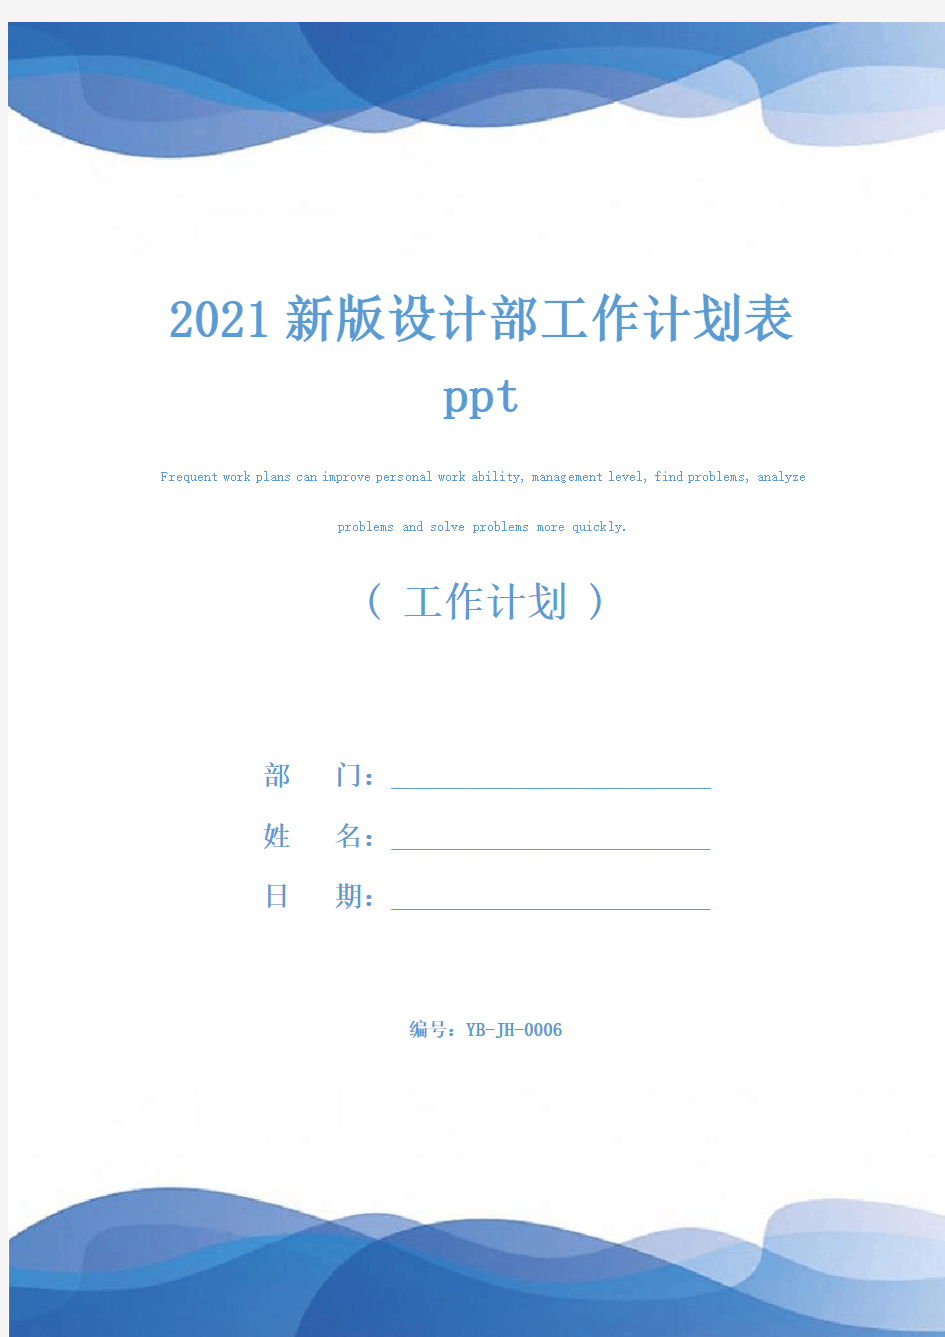 2021新版设计部工作计划表ppt